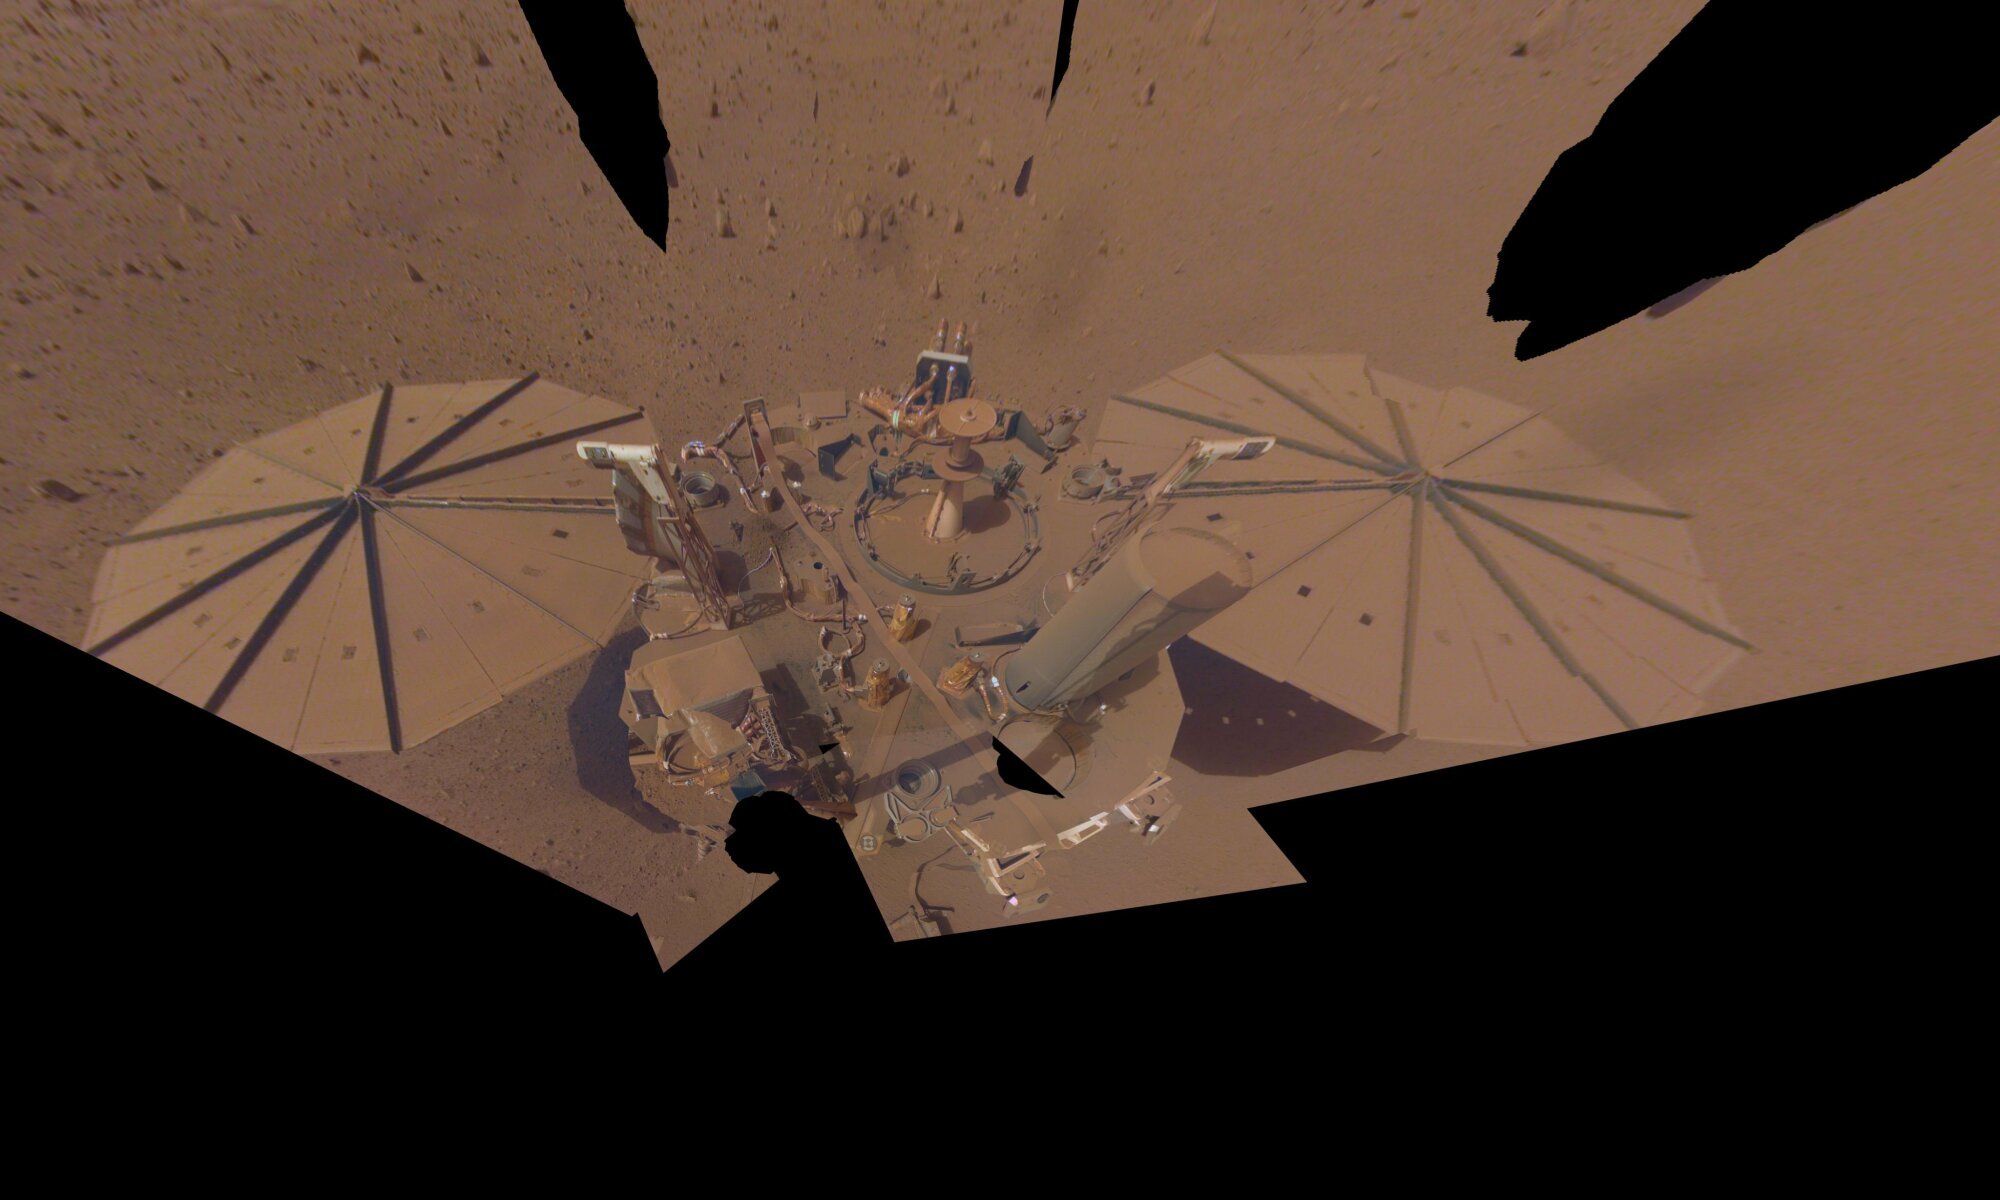 Insight lander gathering dust